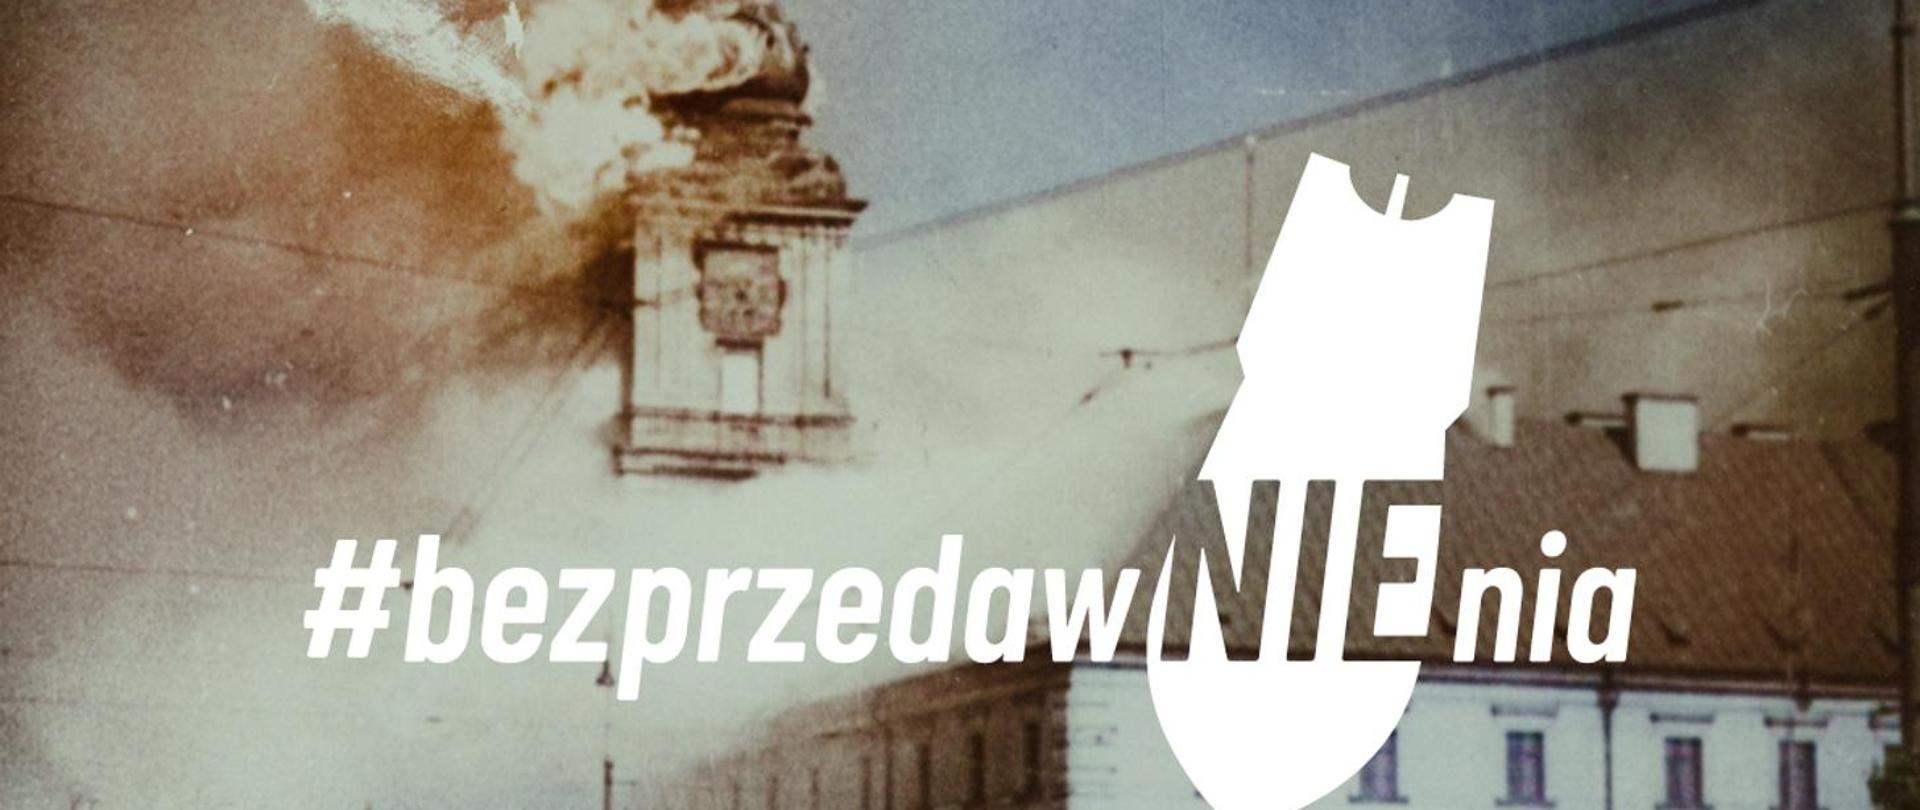 grafika akcji z białym napisem BEZ PRZEDAWNIENIA, w tle płonąca wieża zamku królewskiego w Warszawie, na napisie biały symbol bomby